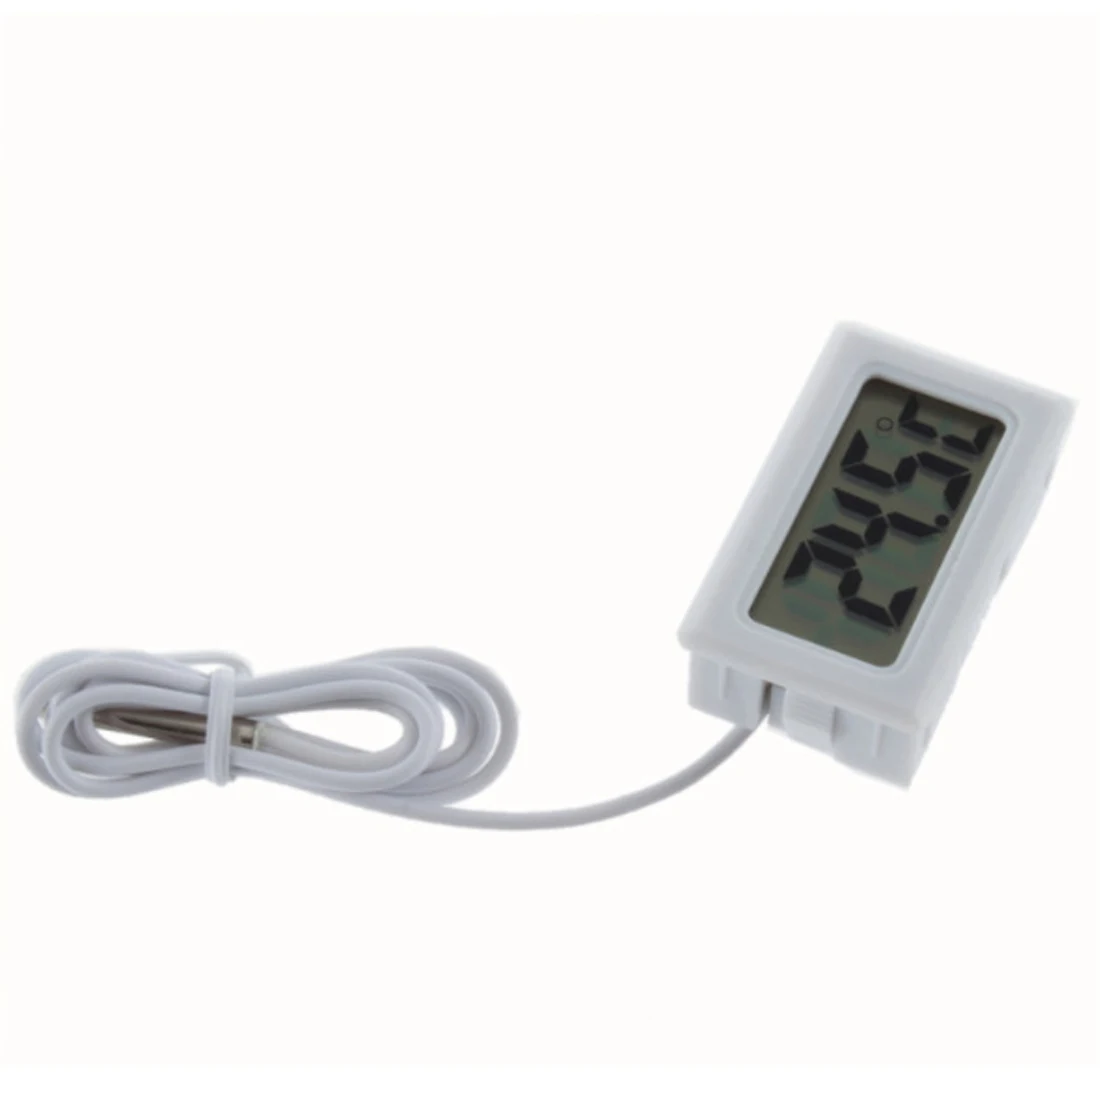 1 шт. Мини ЖК-дисплей инкрустация цифровой термометр датчик для холодильника/аквариума тестер температуры(-50C~ 110C) включает батареи - Цвет: Белый